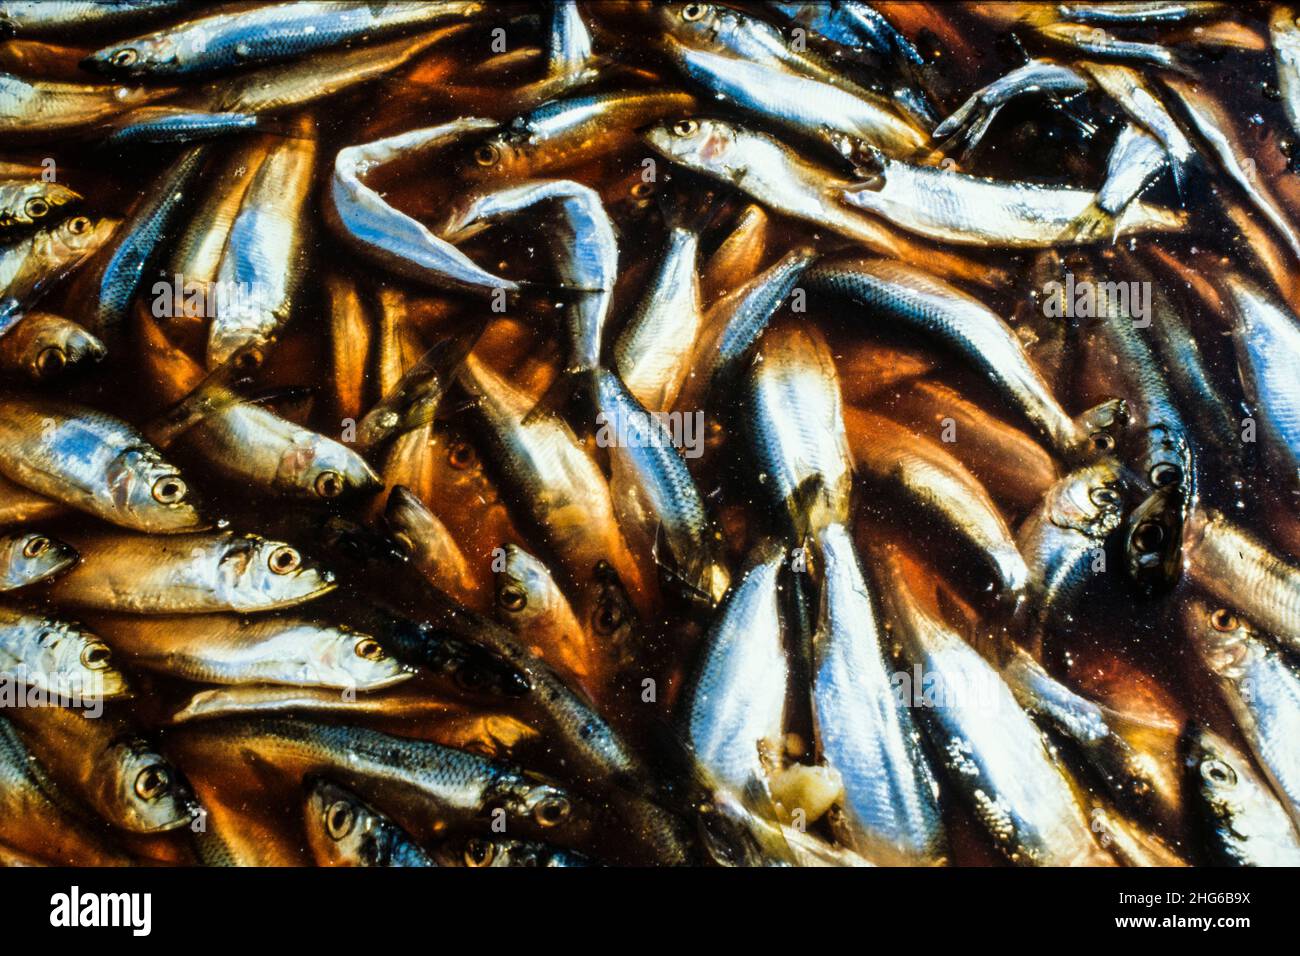 Dose Surströmming ist fermentierte Ostsee-Hering, oft beschrieben als das  Schlimmste riechende Lebensmittel der Welt Stockfotografie - Alamy